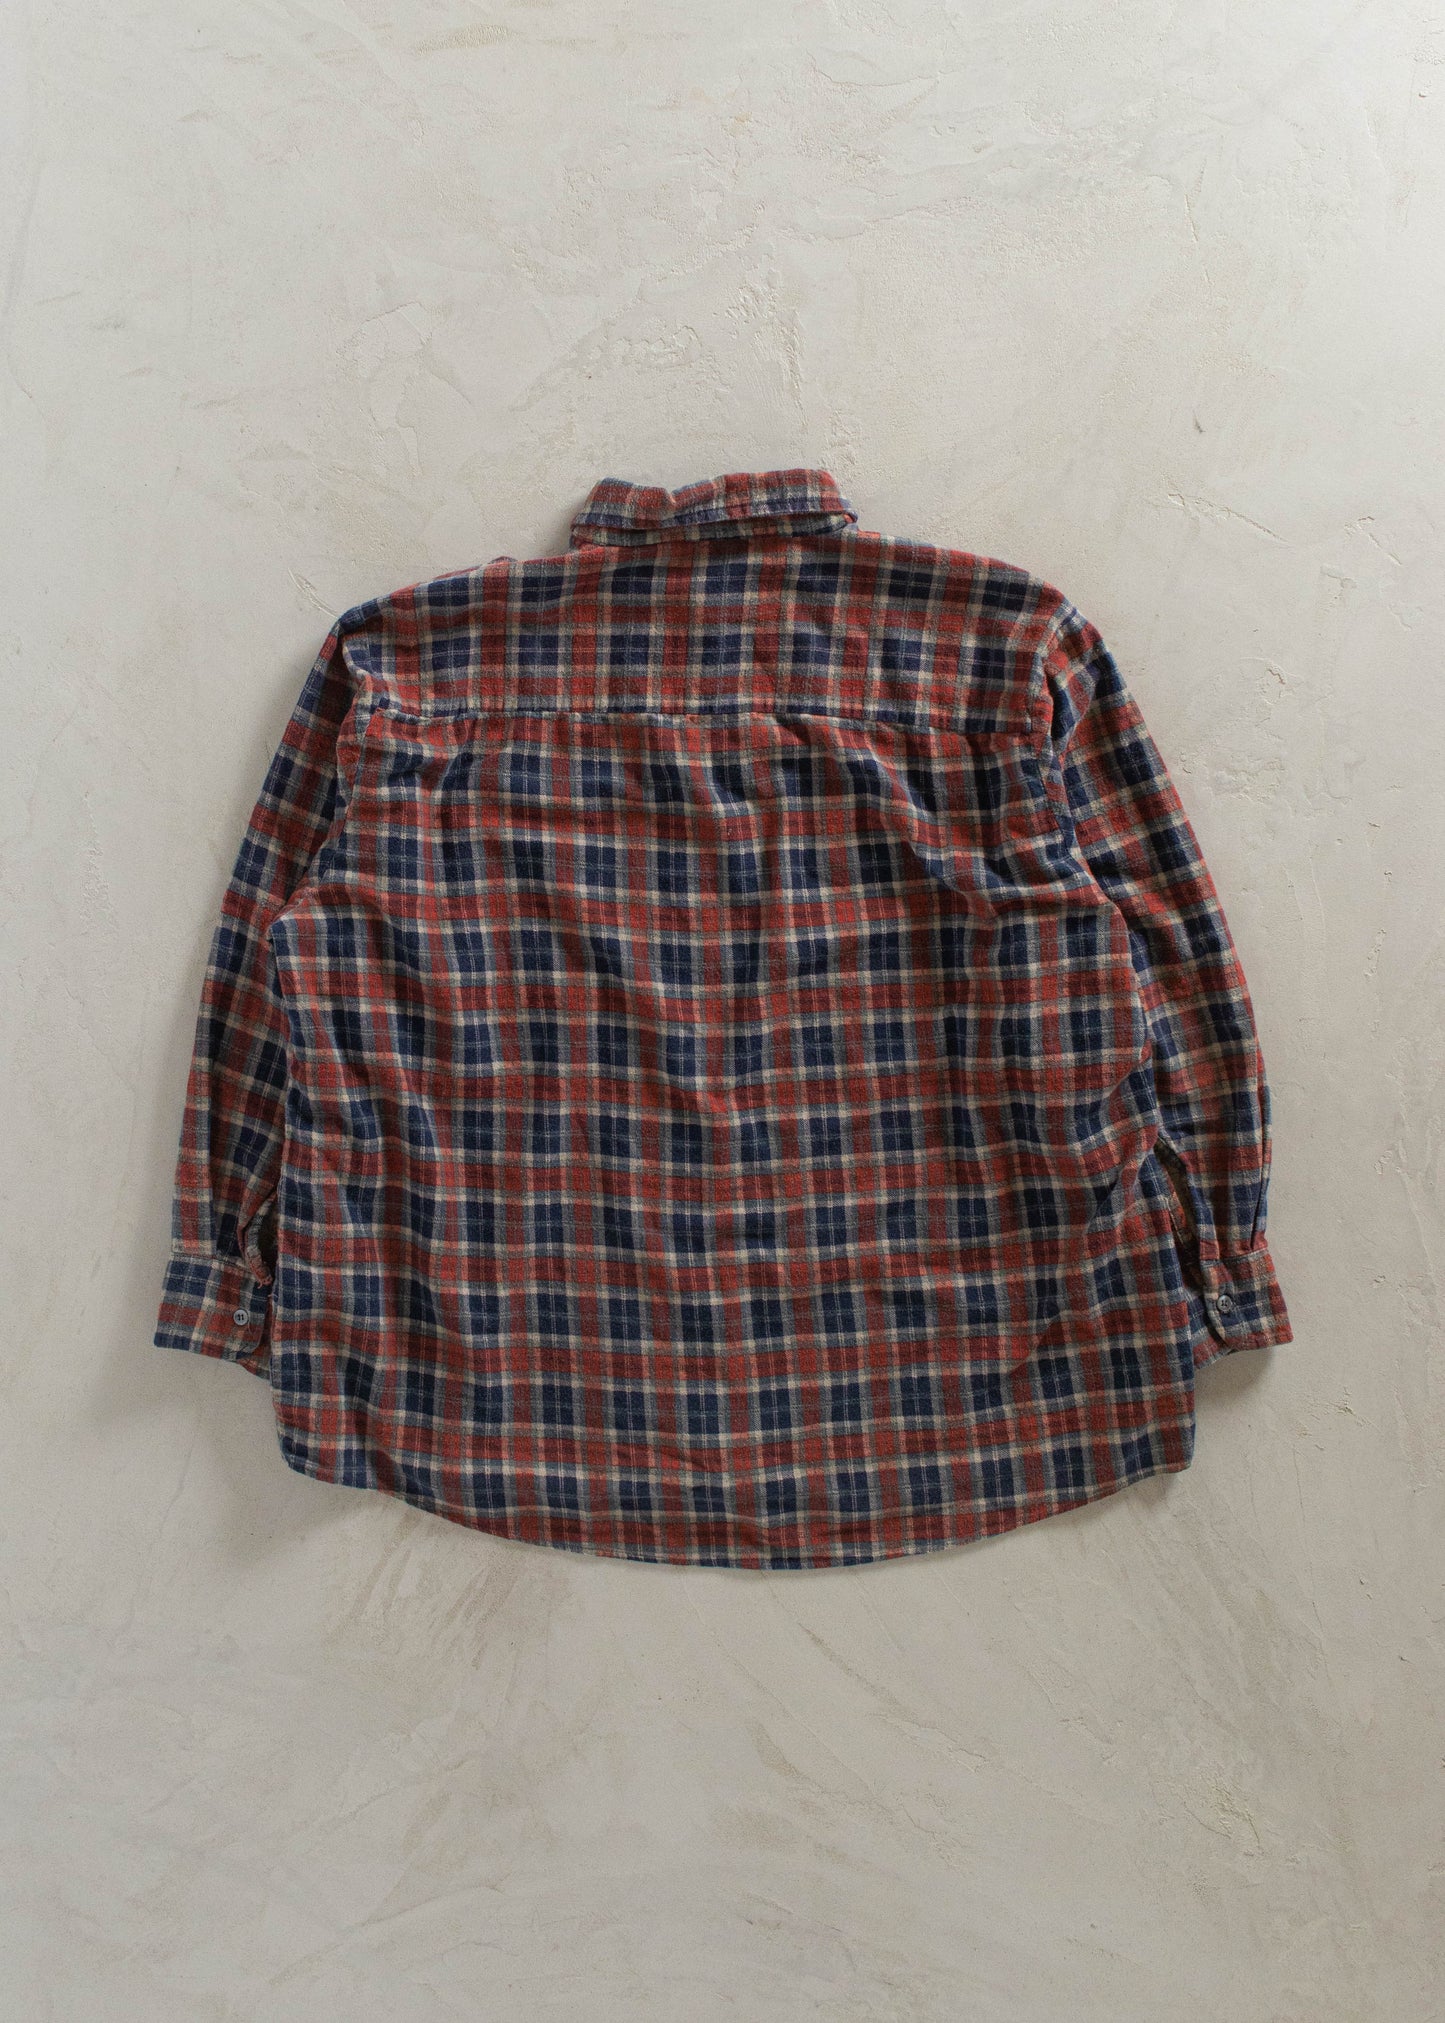 1990s Flannel Button Up Shirt Size 2XL/3XL